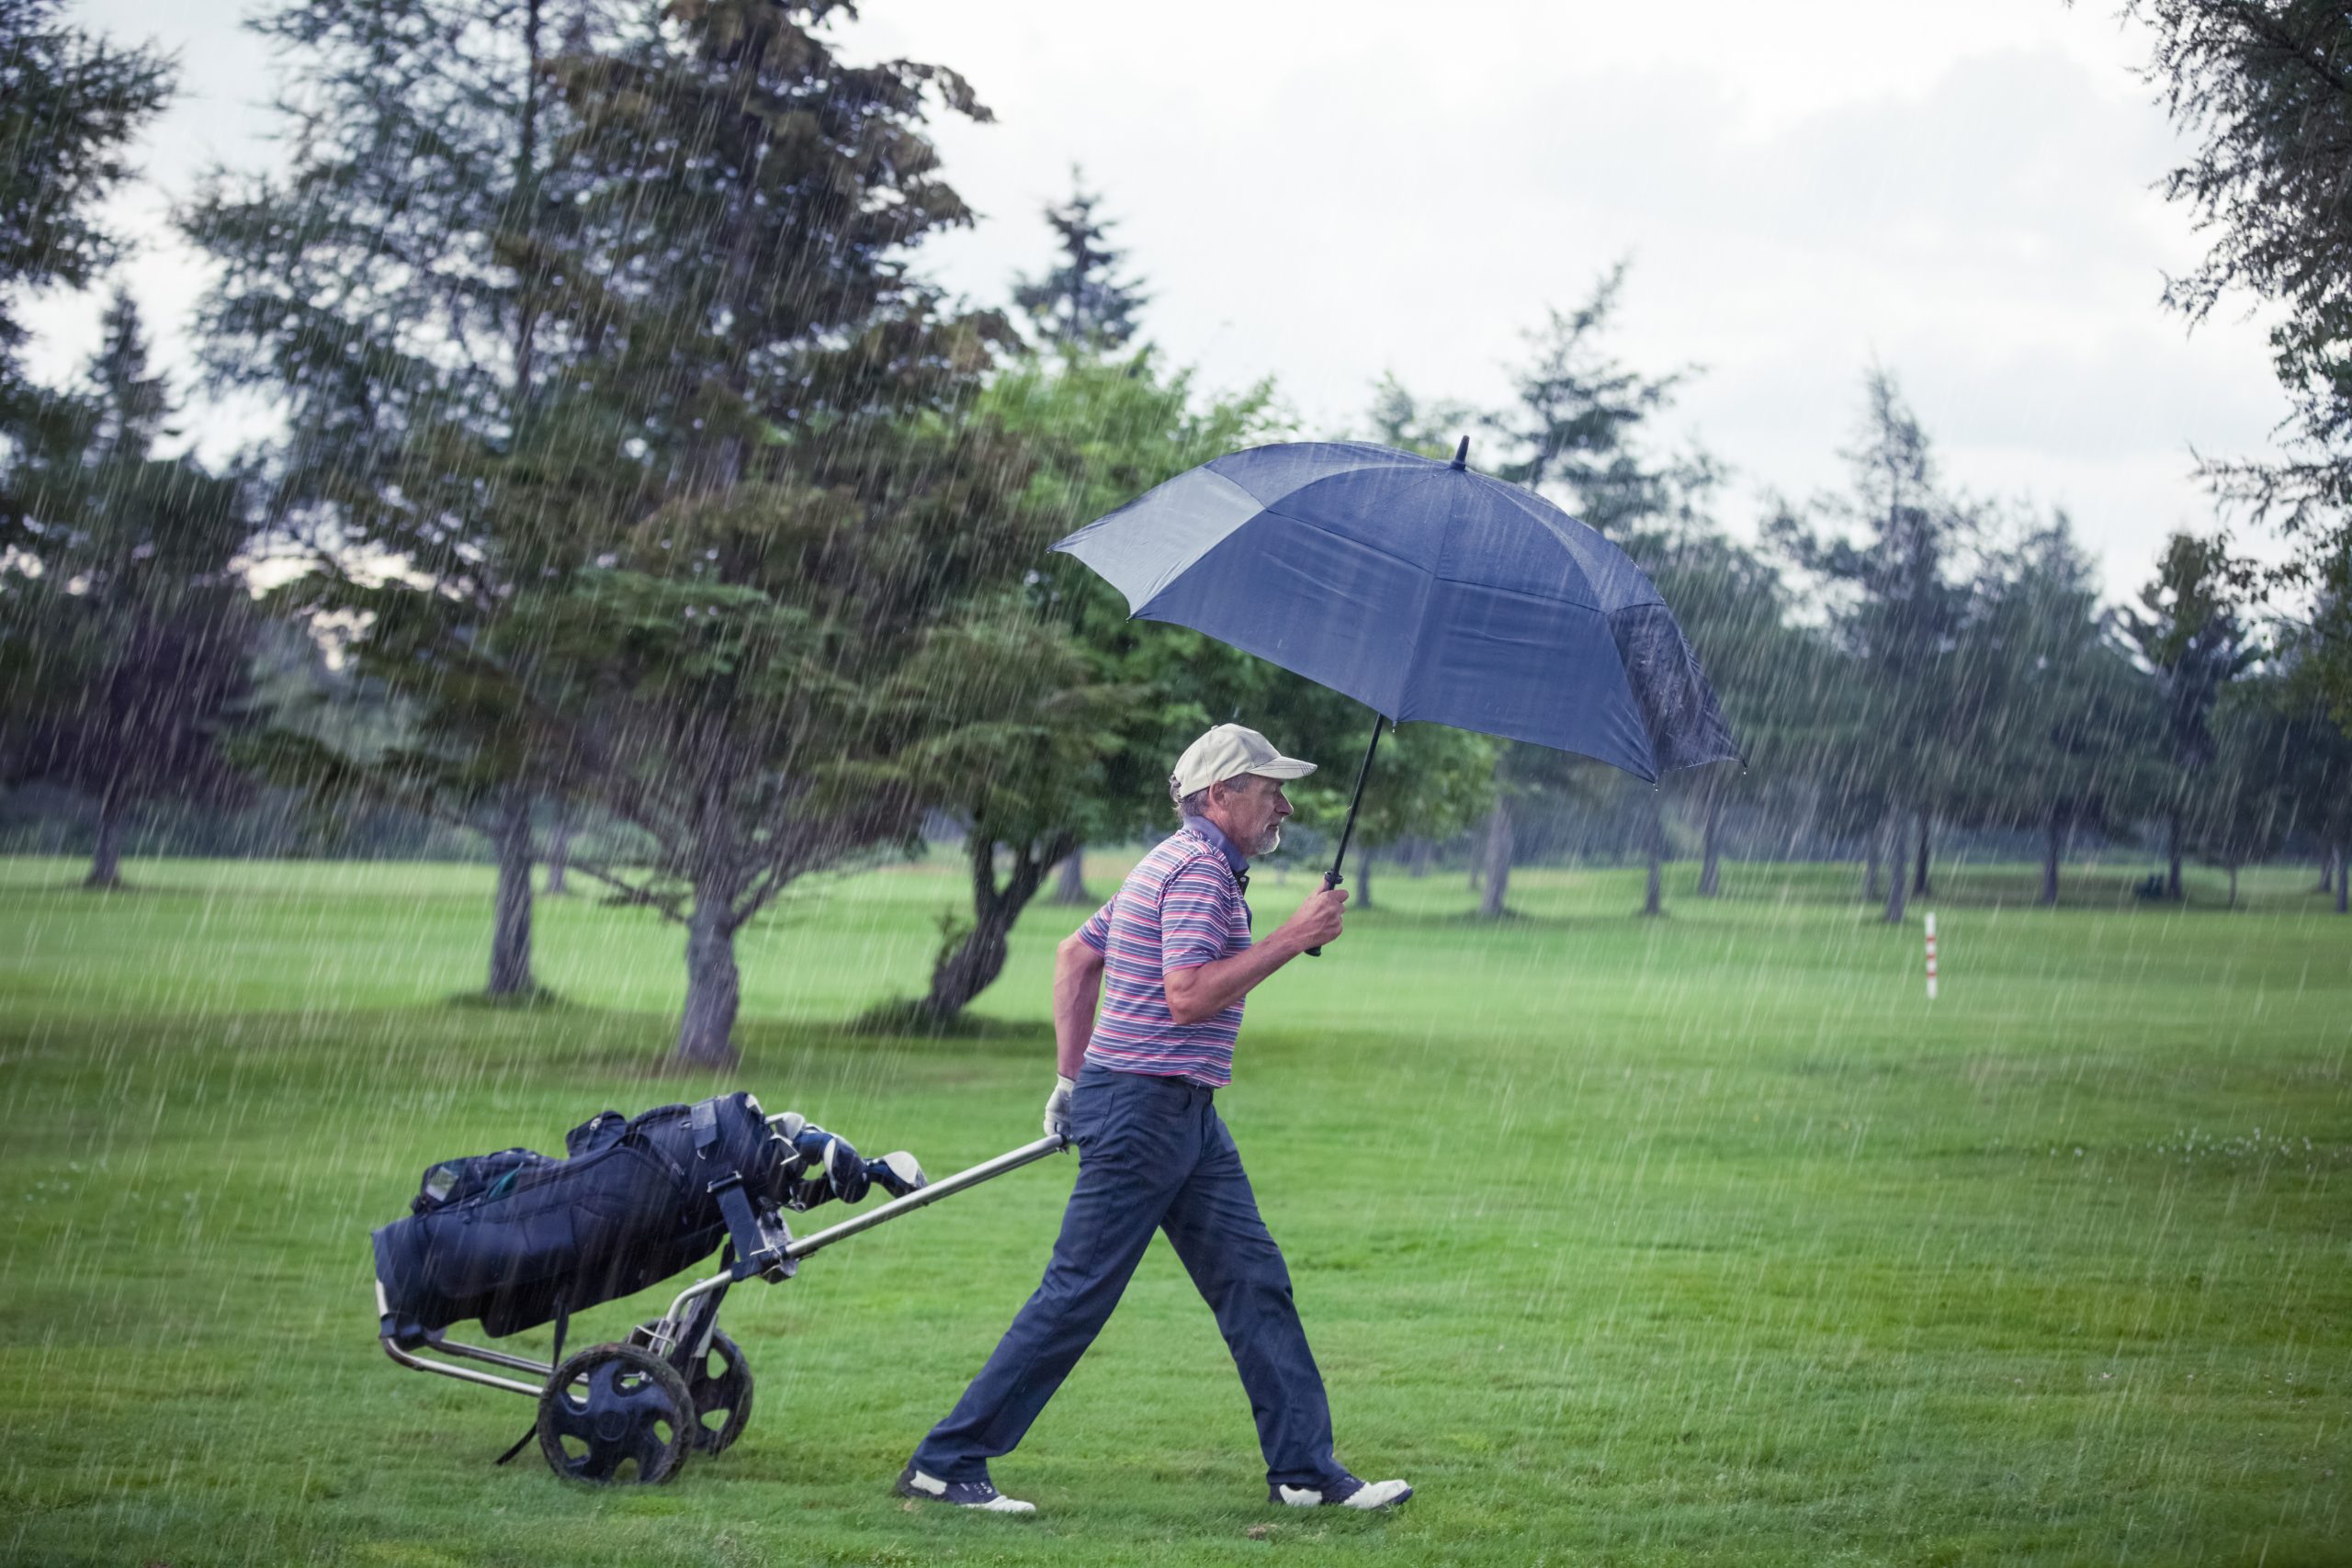 Best Golf Rain Gear - [Top Picks and Expert Review]